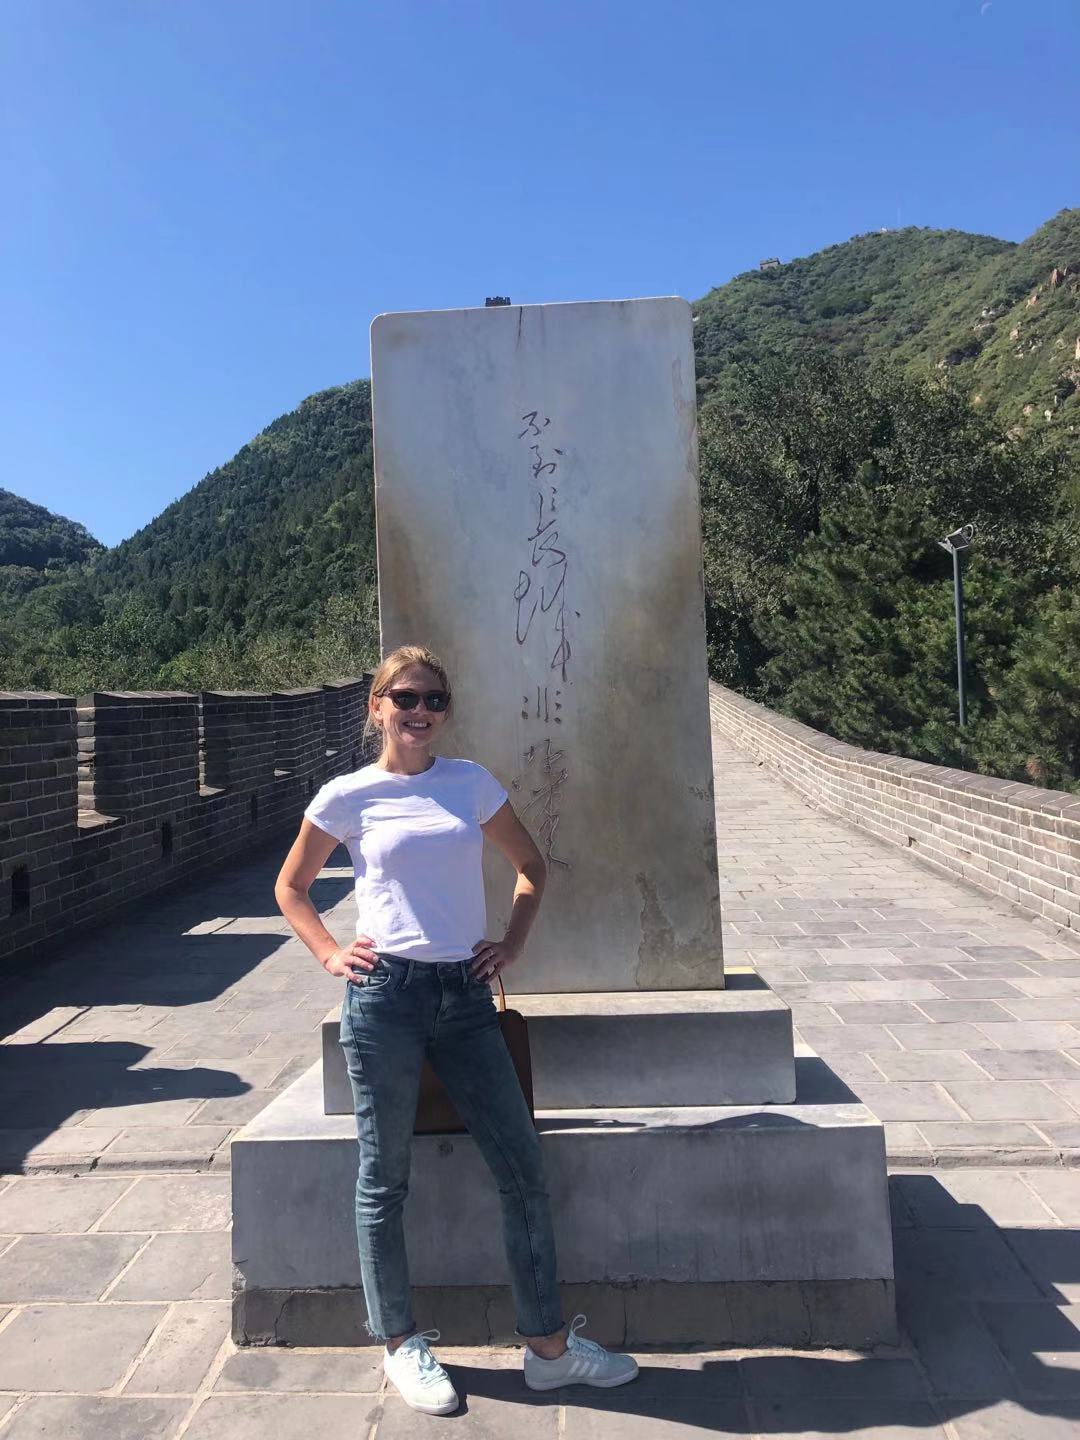 Juyongguan Great Wall